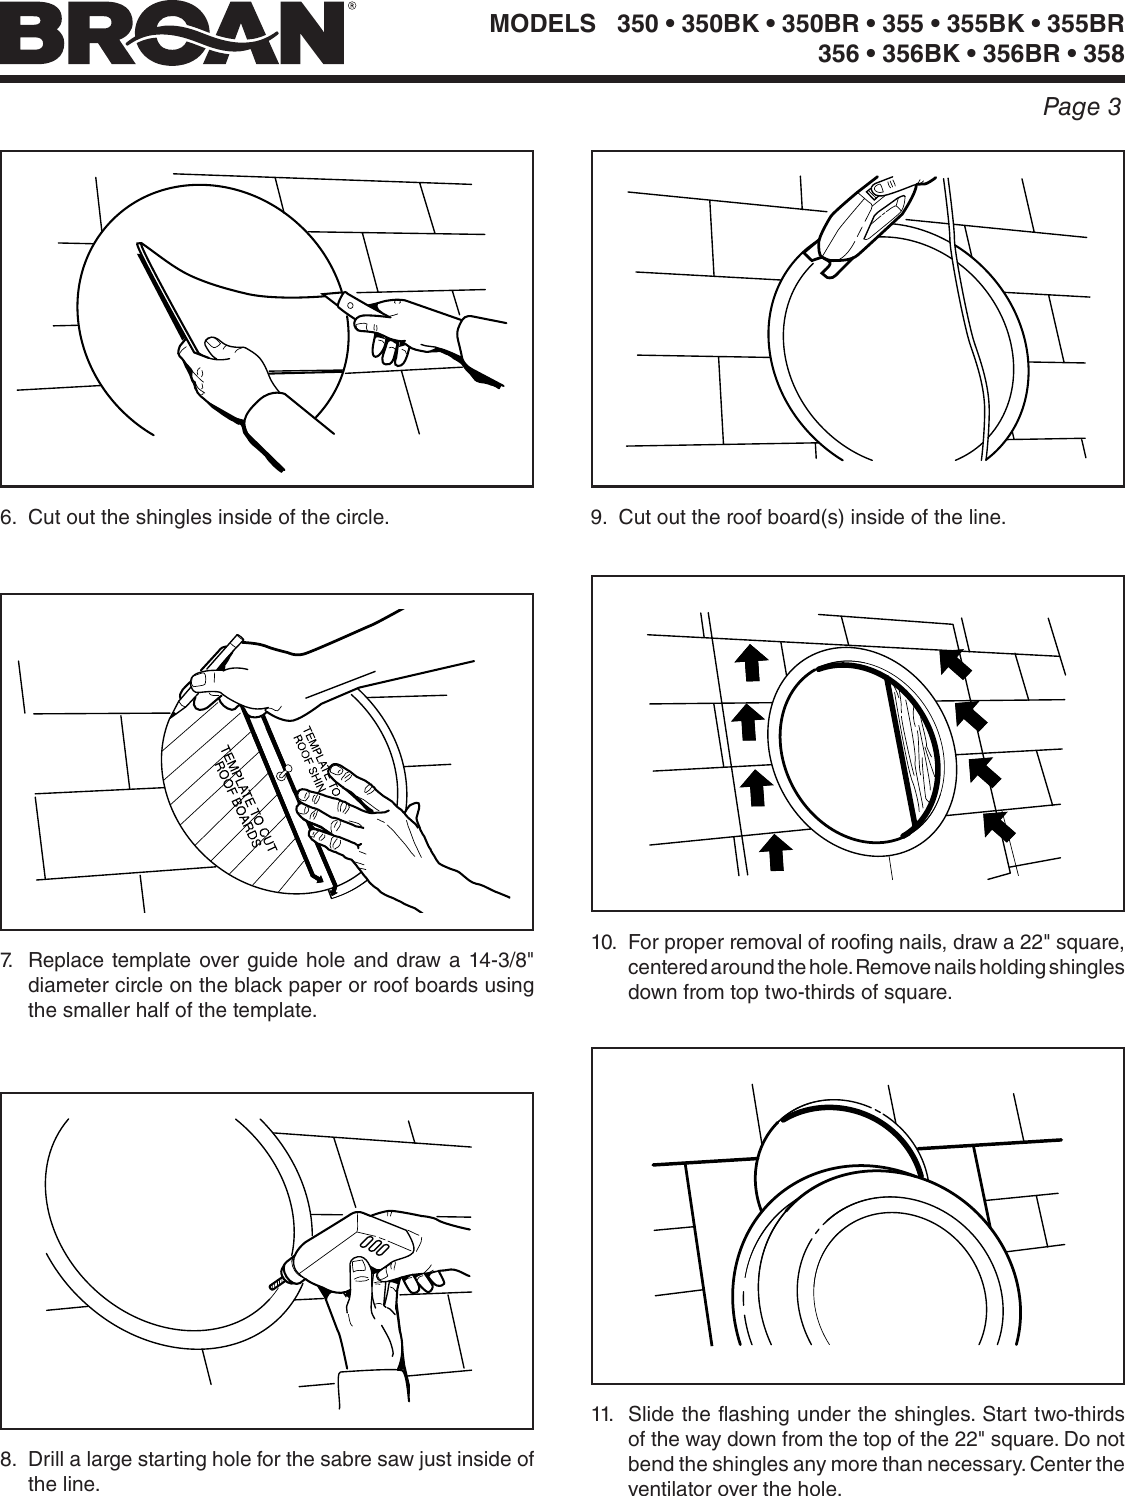 Page 3 of 8 - Broan Broan-350-Users-Manual-  Broan-350-users-manual